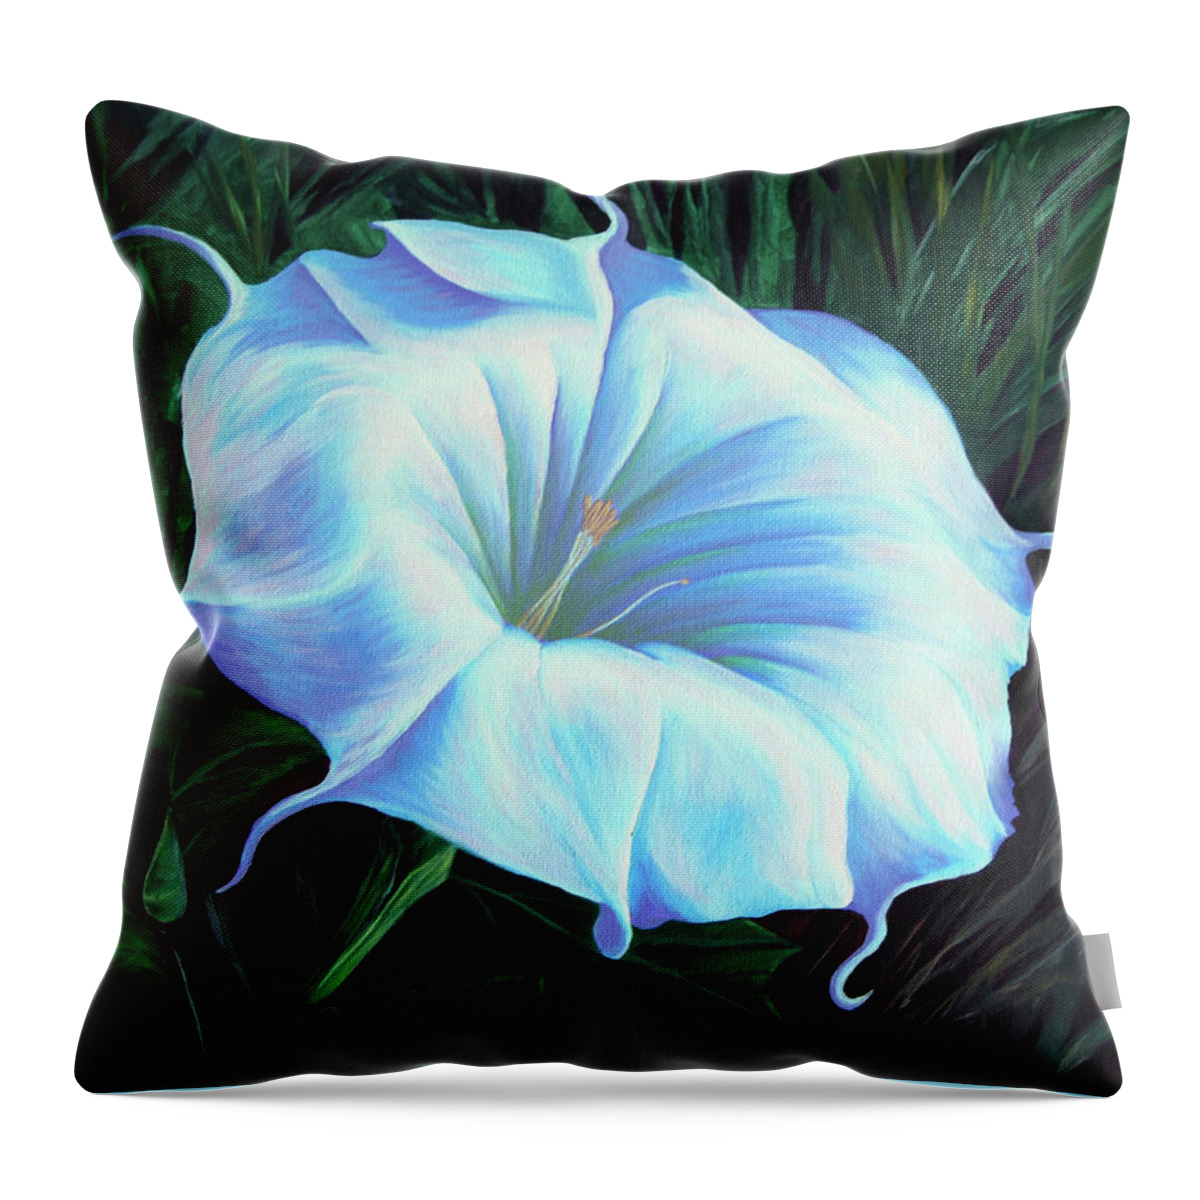 Flower Throw Pillow featuring the painting Datura Flower by Cheryl Fecht